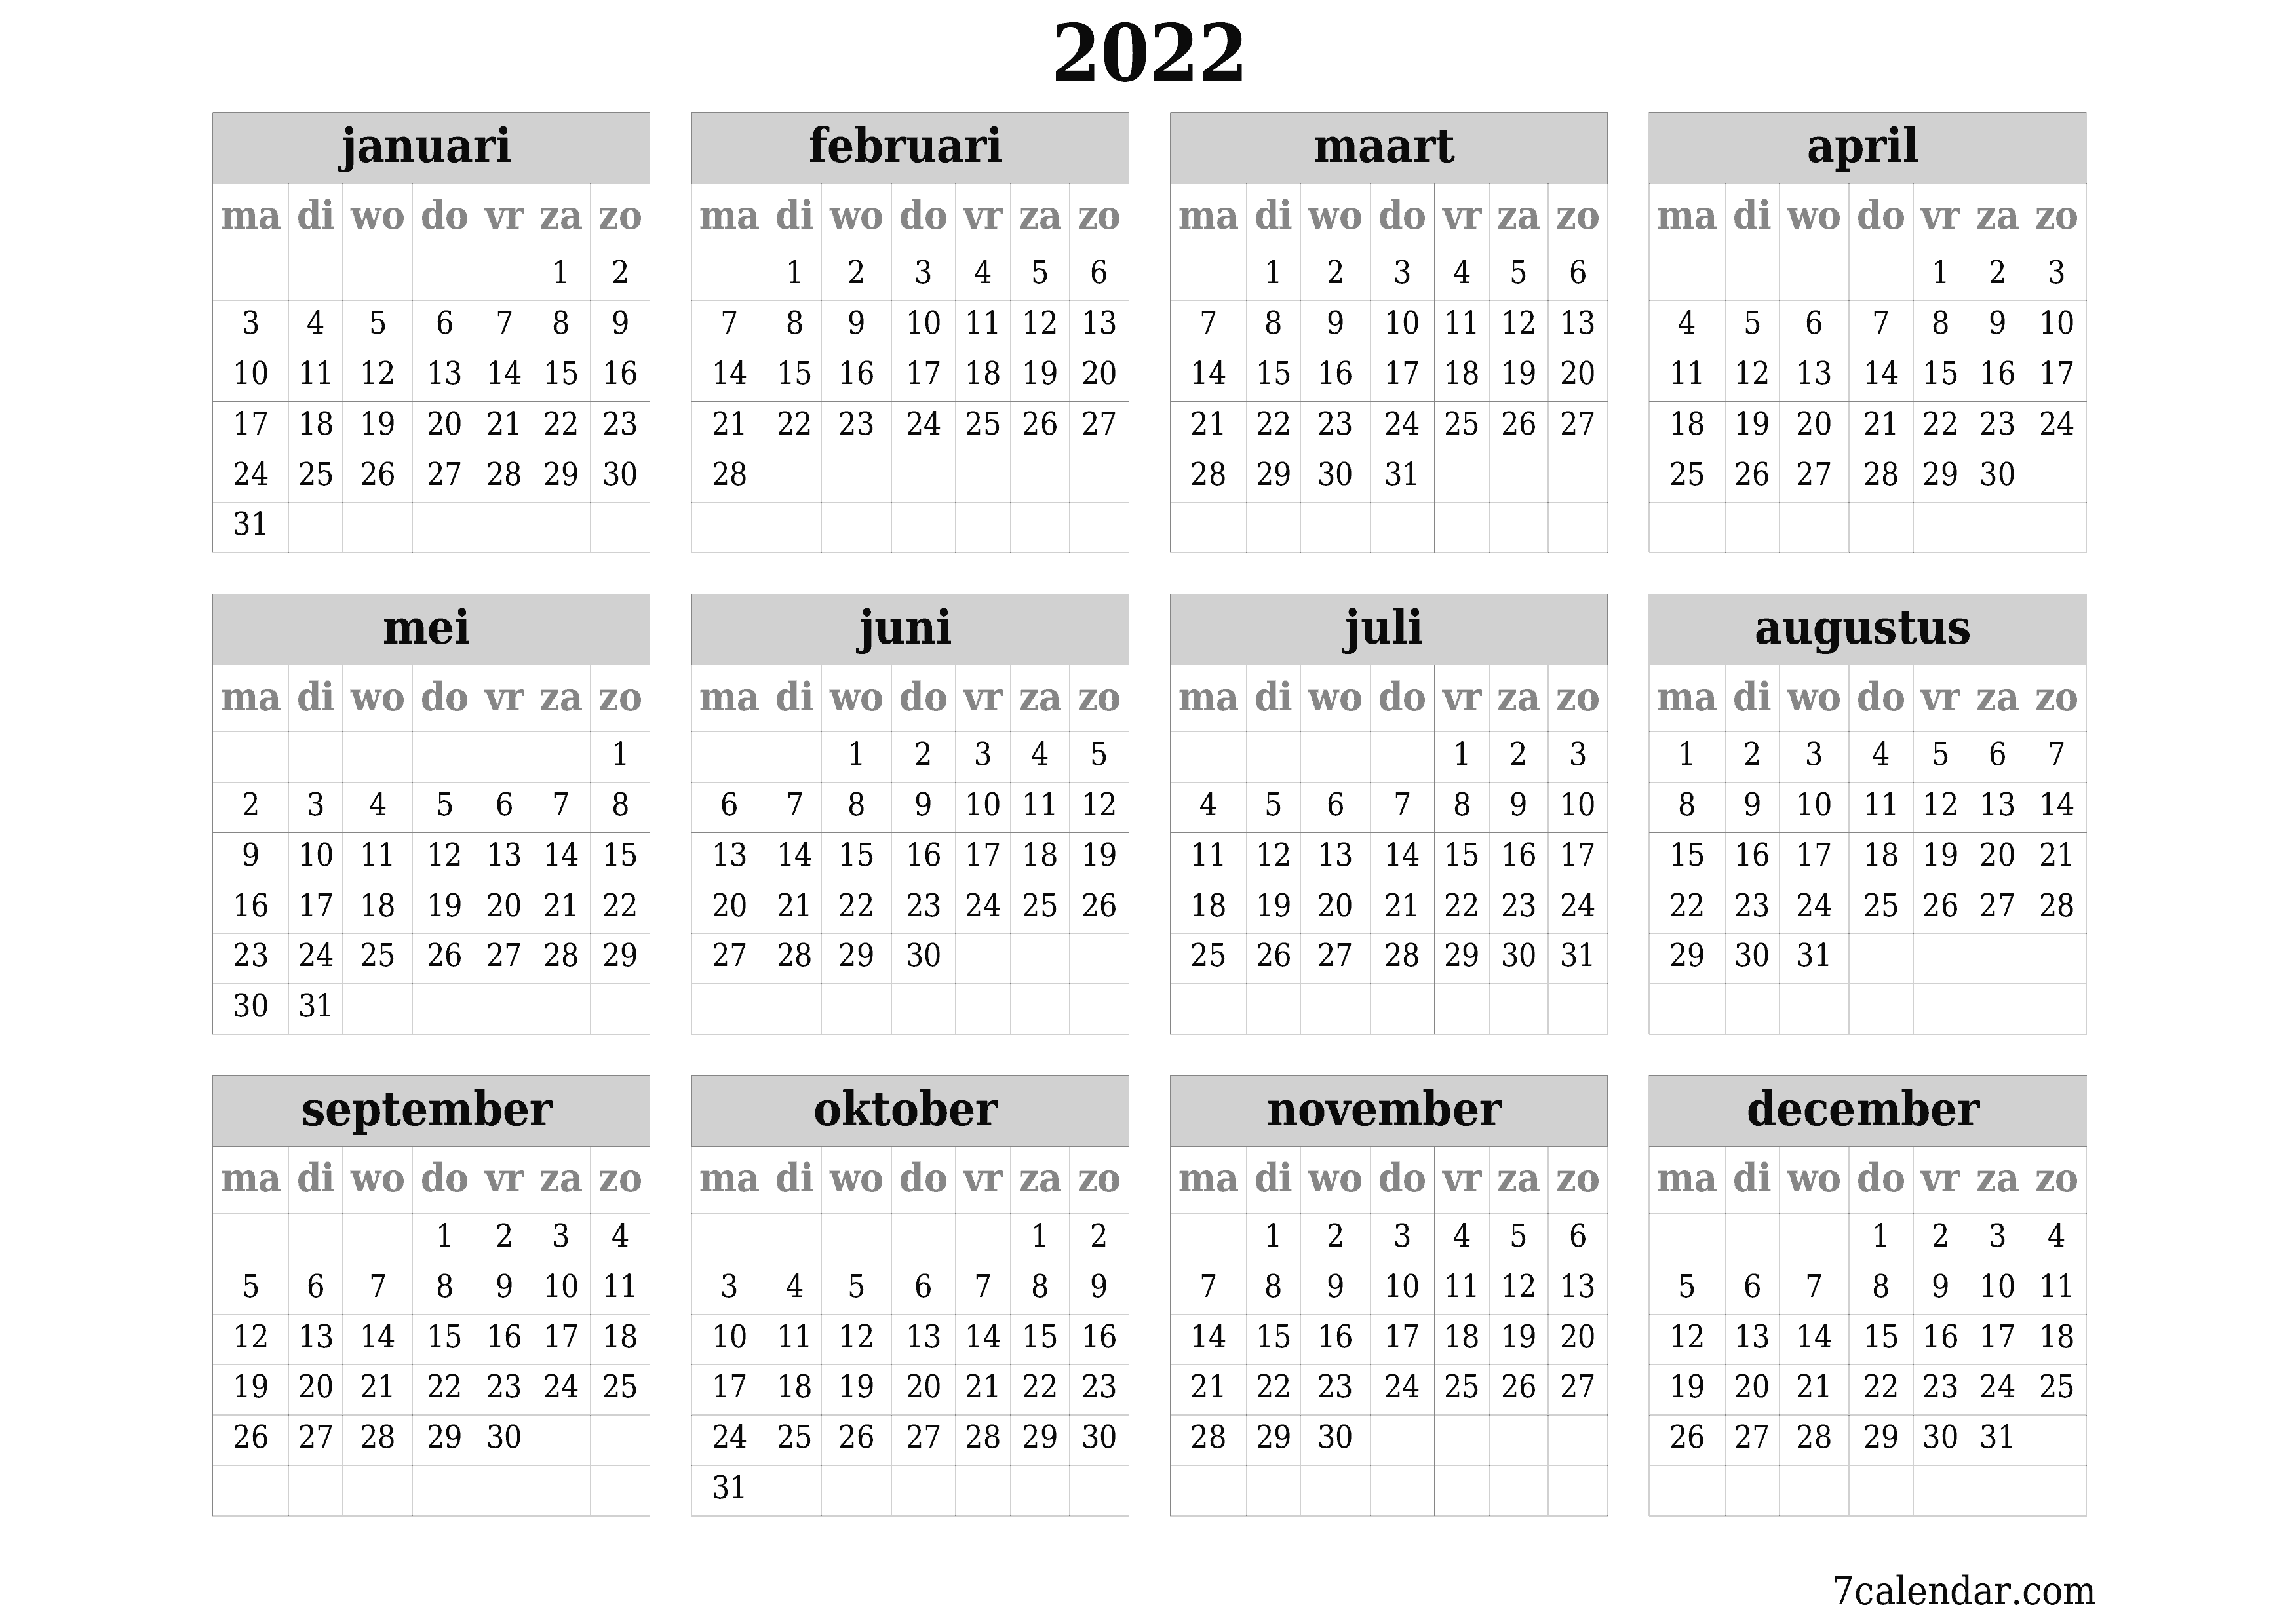 Lege jaarplanningskalender voor het jaar 2022 met notities, opslaan en afdrukken naar pdf PNG Dutch - 7calendar.com